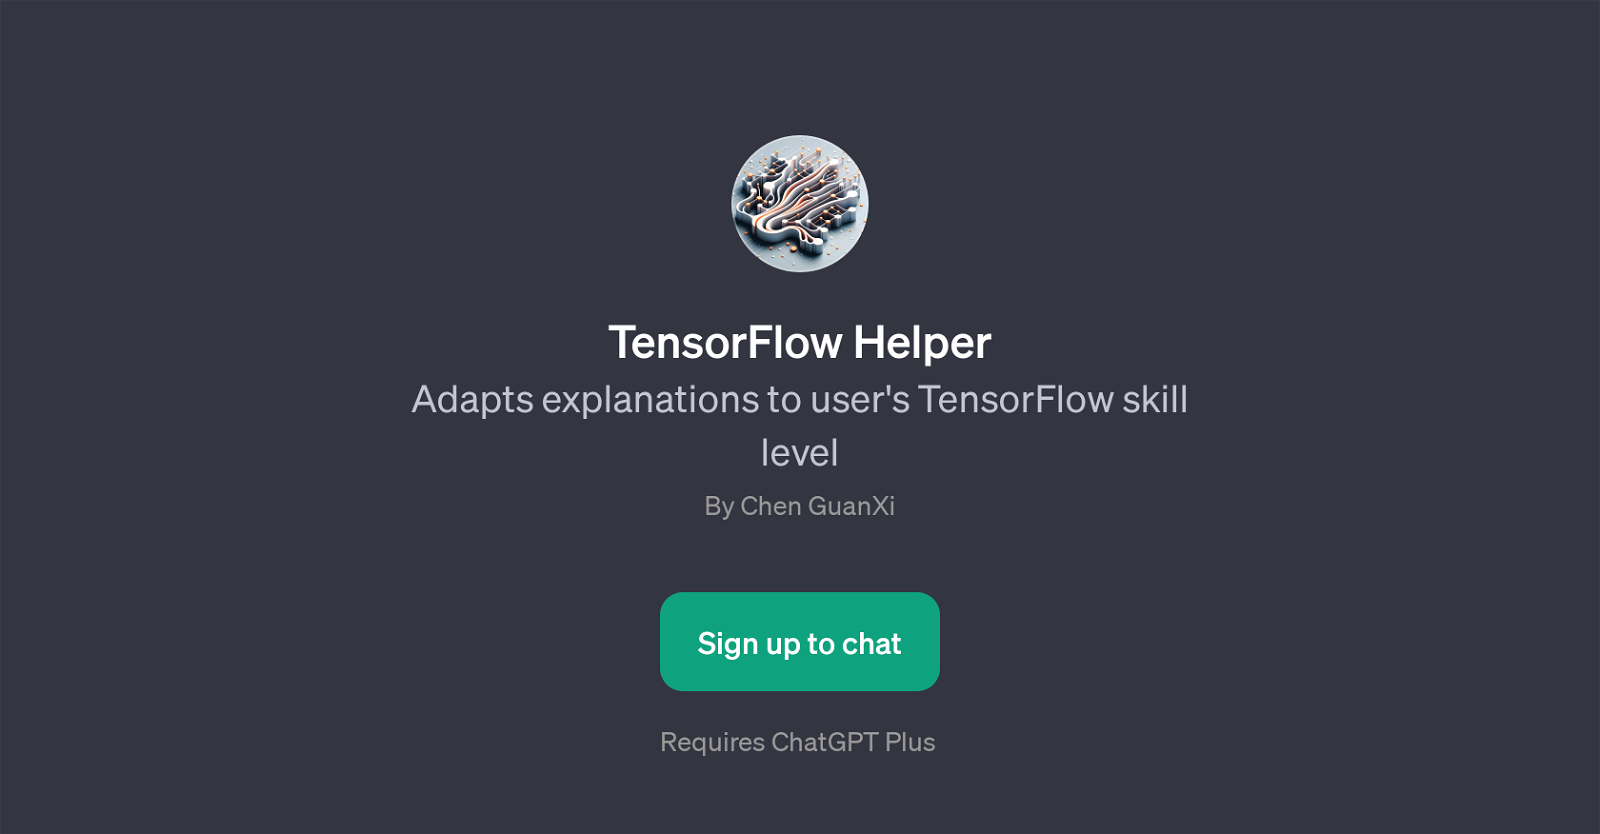 TensorFlow Helper website